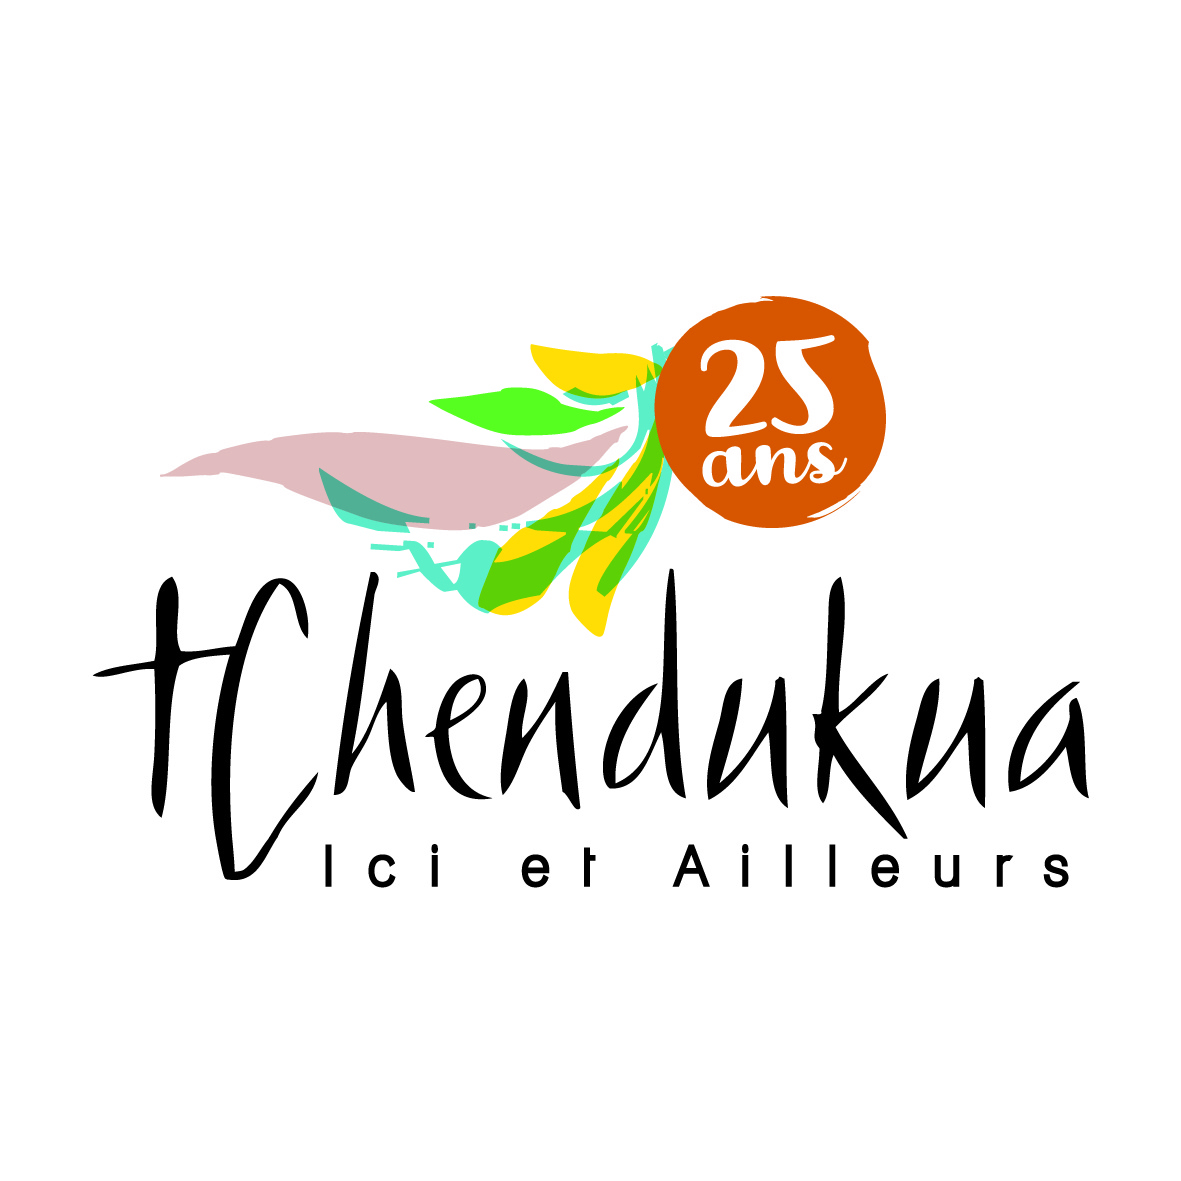 Logo Tchendukua ici et ailleurs 2021